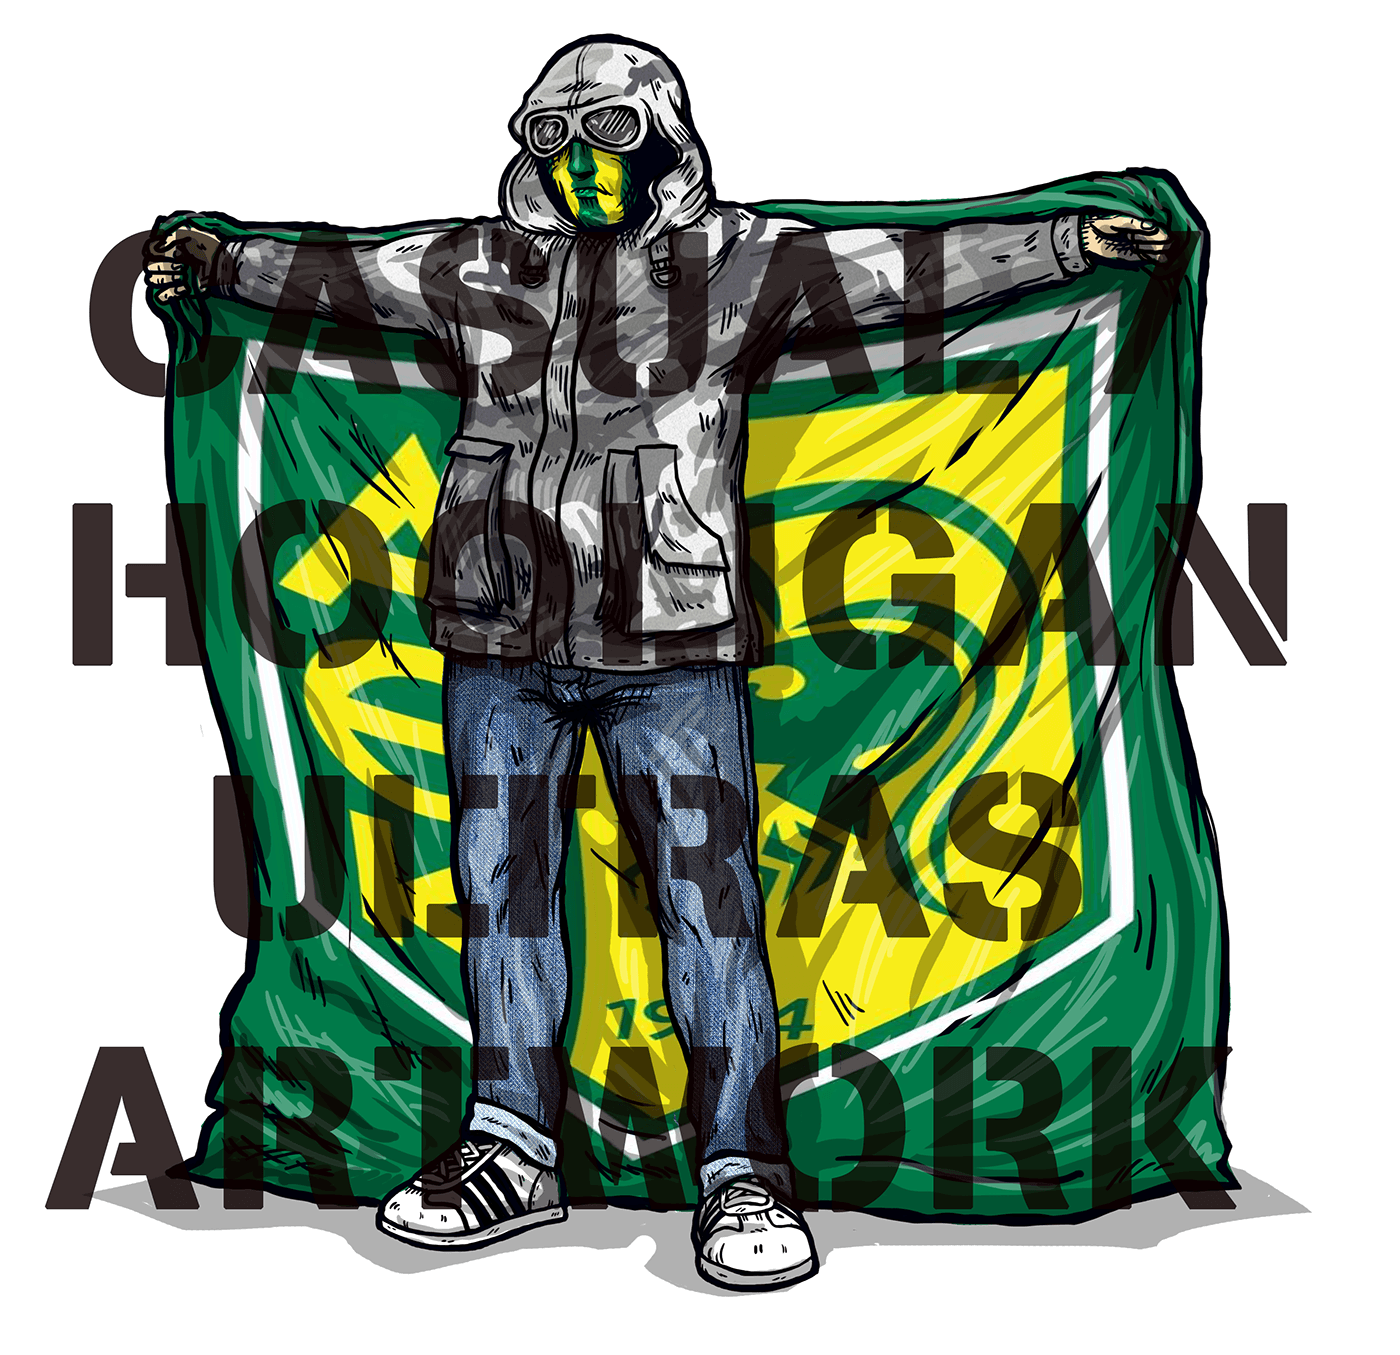 hooligans ultras football soccer futebol Sports Design stadium ILLUSTRATION  Digital Art  Pyro